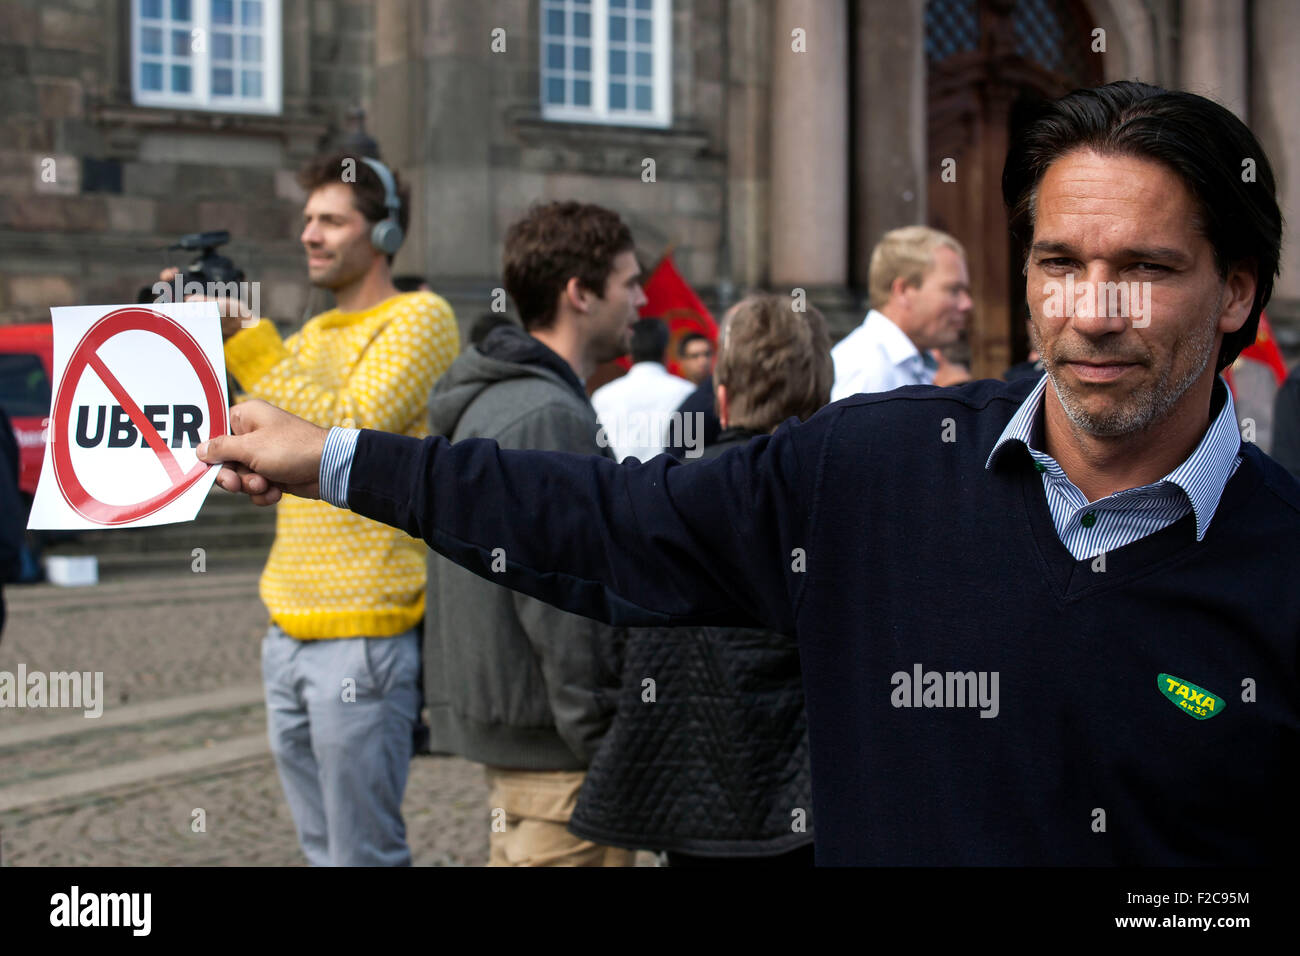 Copenhague, Dinamarca. El 16 de septiembre, 2015. Los taxistas de Copenhague manifestarse contra Uber delante del Parlamento danés. Alegaron que Uber ofrecen su servicio en violación de la ley con respecto a la conducción de Taxi y que Uber drivers no pagan impuestos. Crédito: OJPHOTOS/Alamy Live News Foto de stock